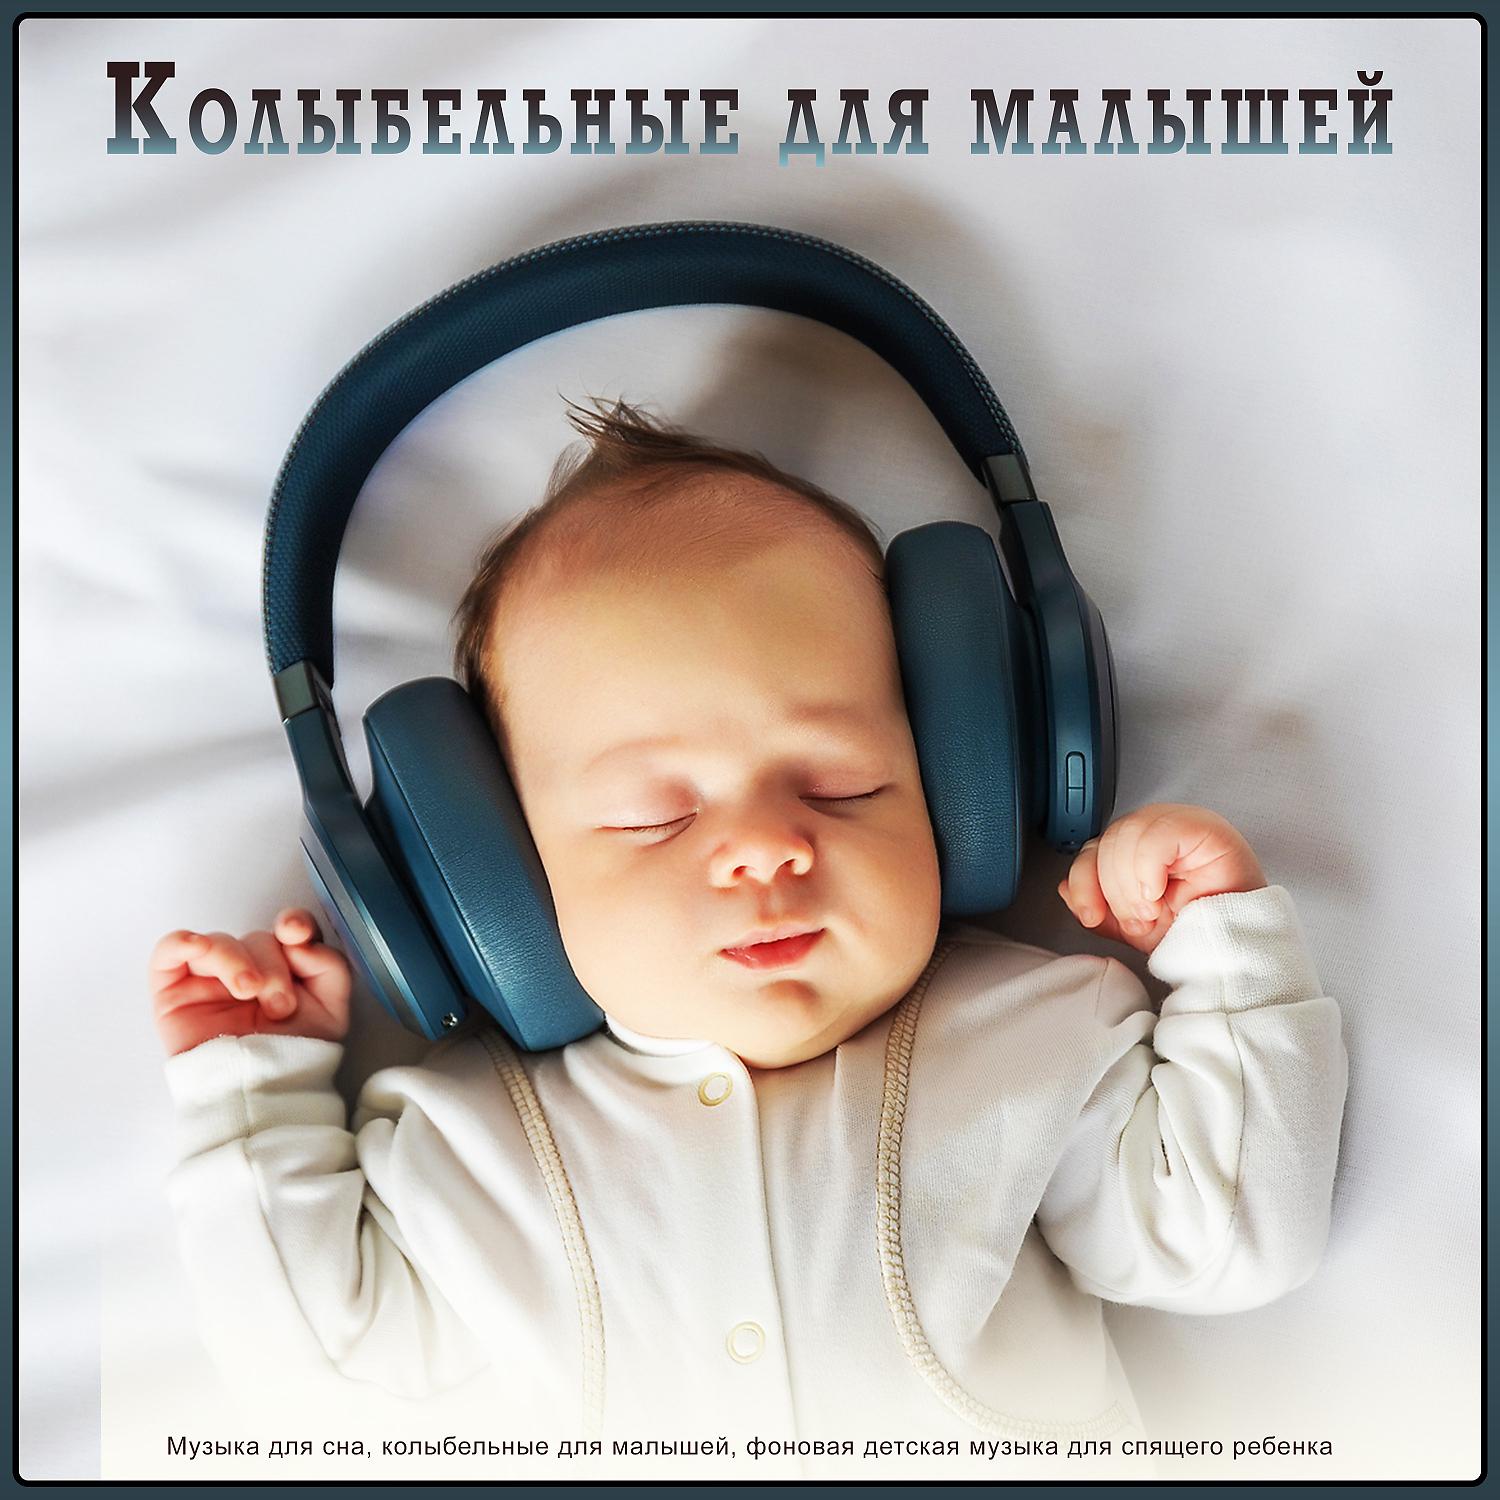 Колыбельные мелодии для засыпания. Музыка для сна младенца. Музыка для сна для малышей. Мелодии для засыпания малышей. Колыбельная для малышей успокаивающая.